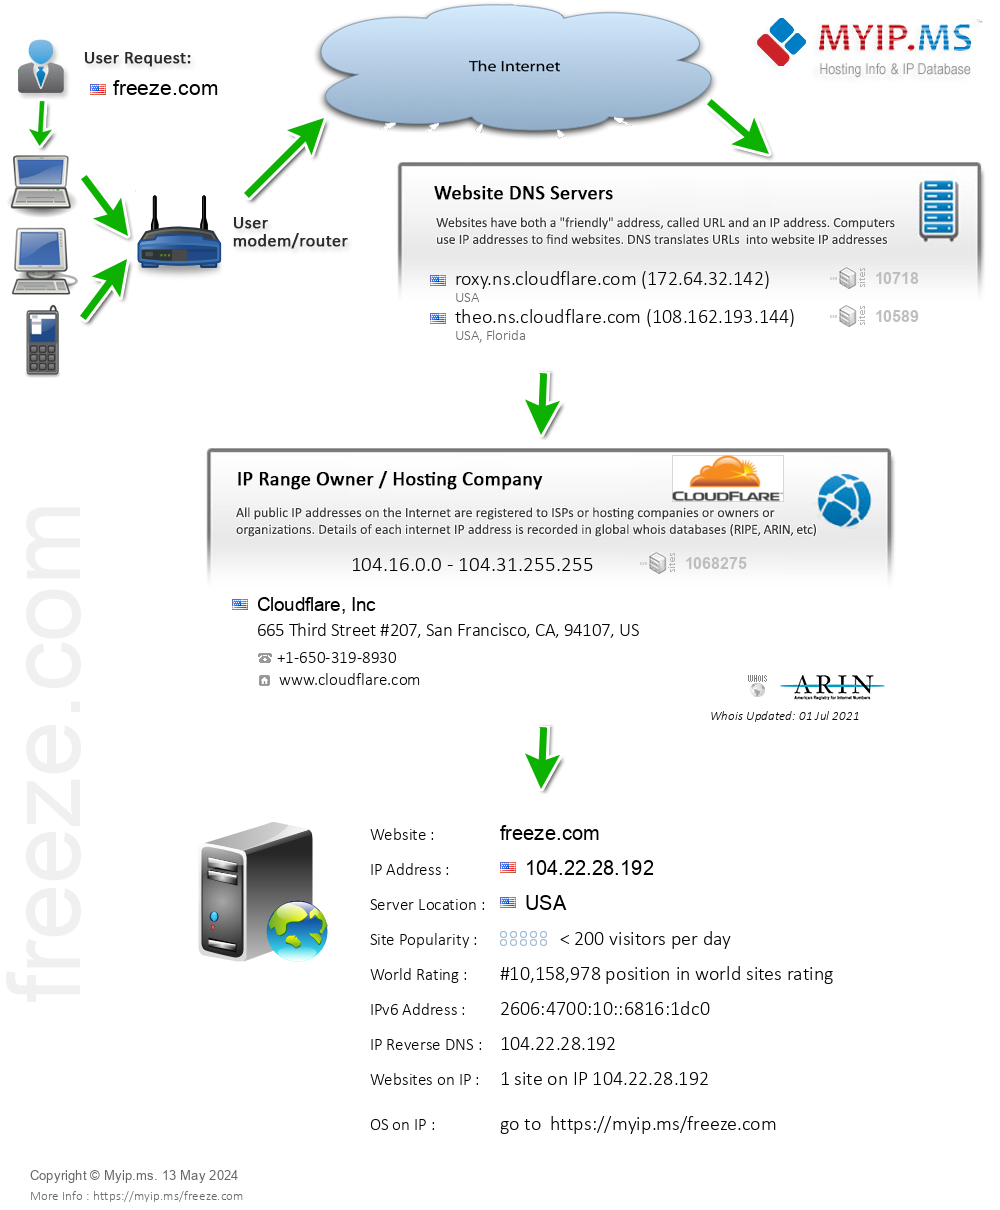 Freeze.com - Website Hosting Visual IP Diagram